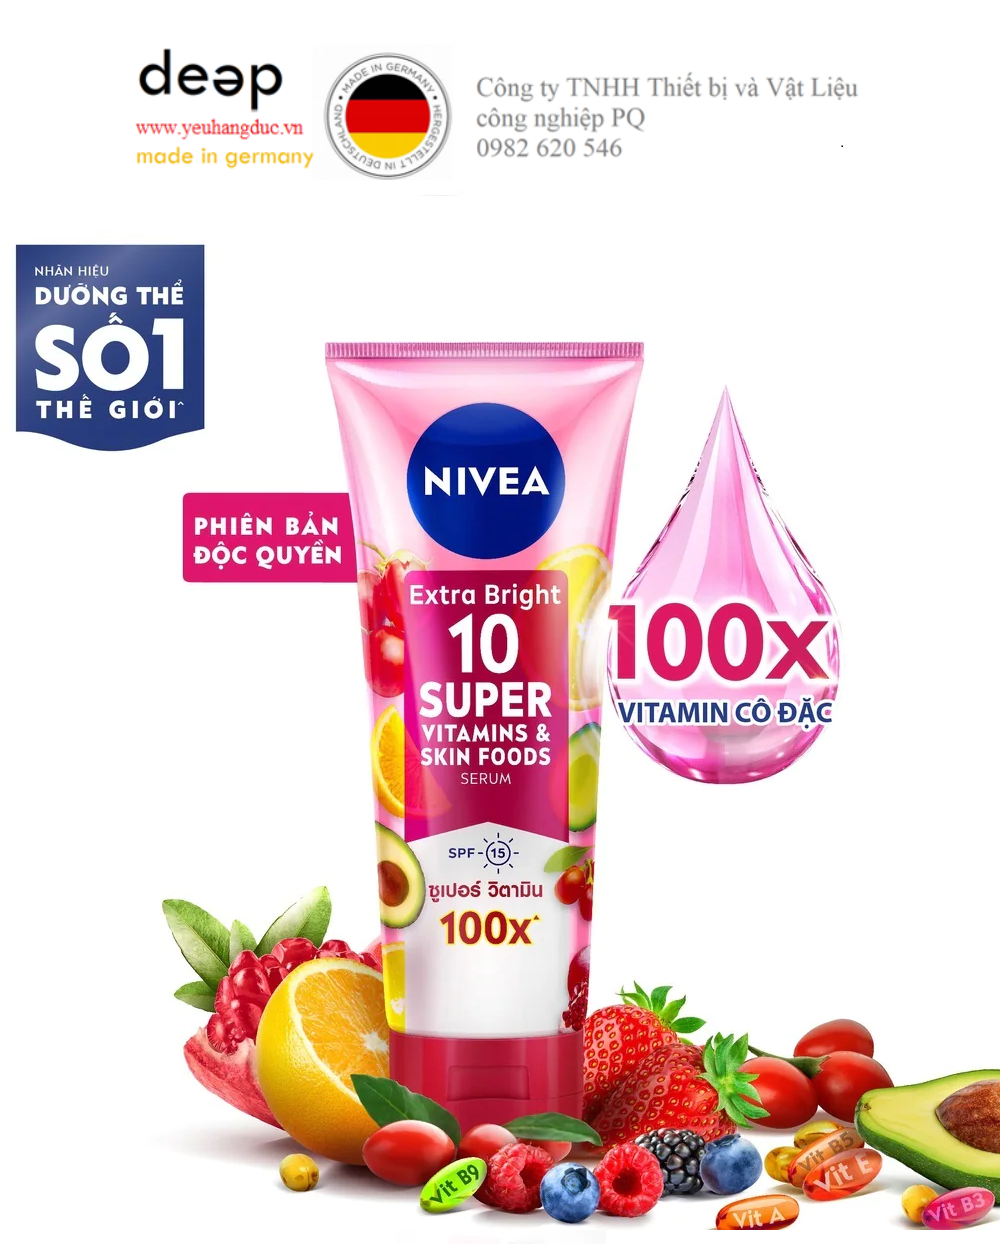  Tinh Chất Dưỡng Thể Nivea Sáng Da Extra Bright 10 Super Vitamin & Skin Foods Serum SPF15 180ml DEEP30 www.yeuhangduc.vn sẵn sàng cho bạn 